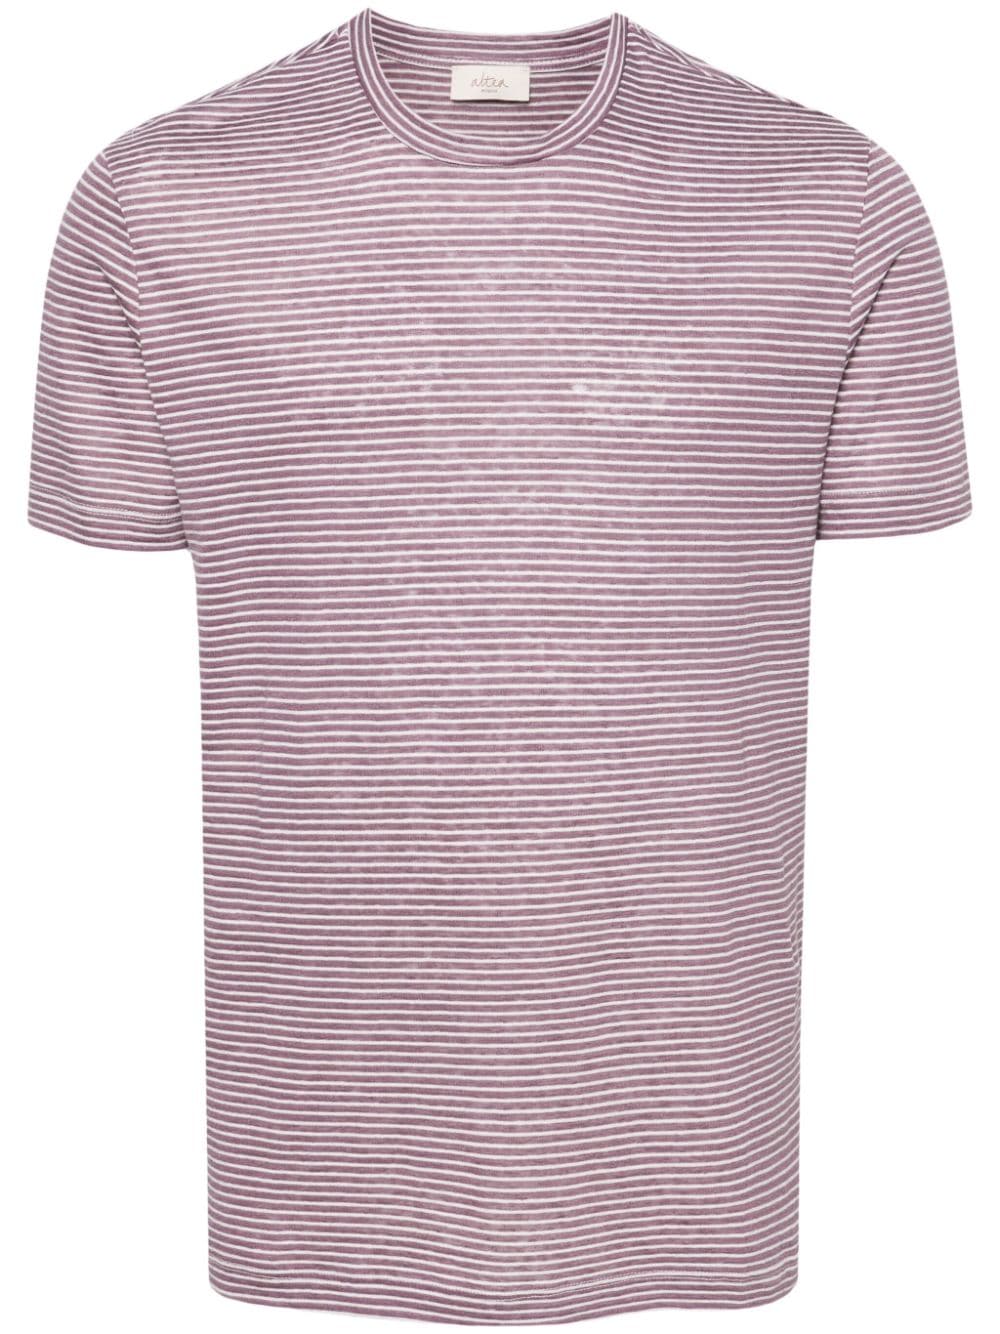 Altea Striped Linen Blend T-shirt In Pink